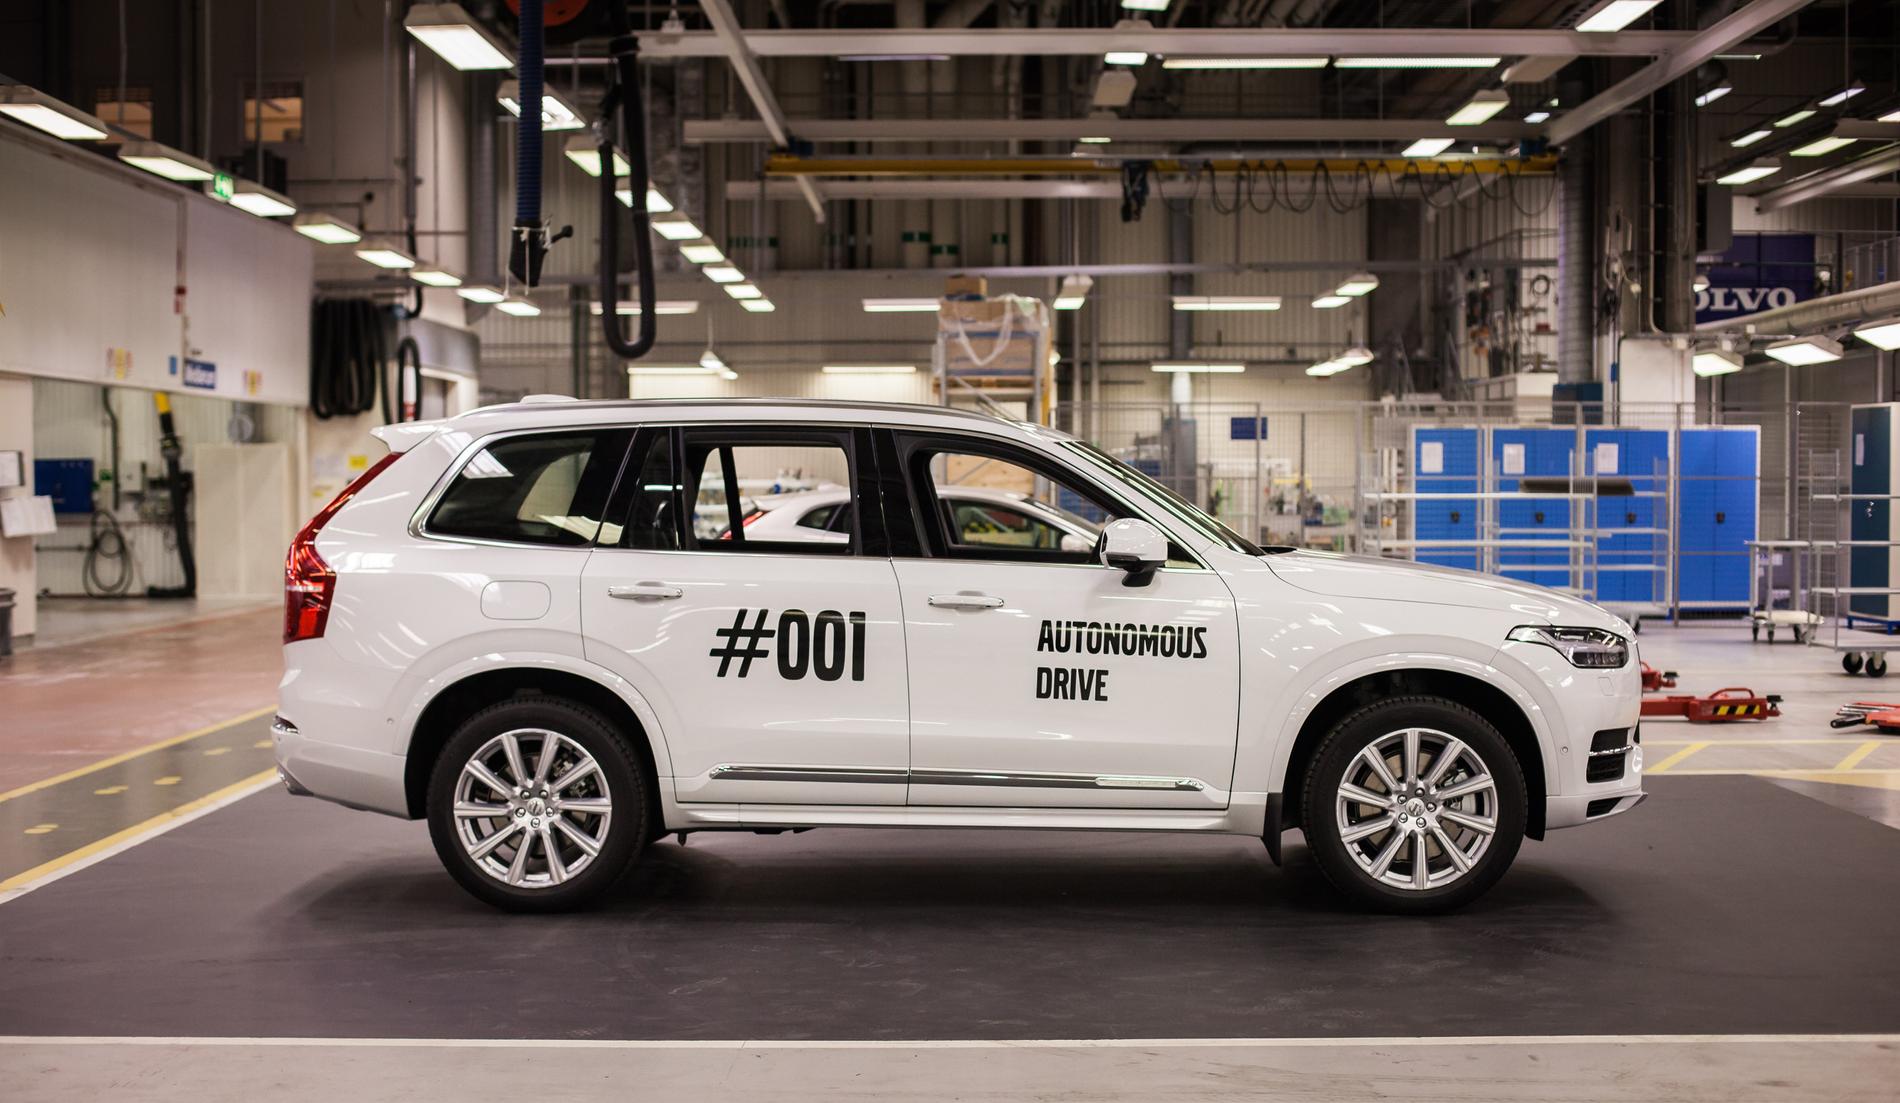 Den första Volvon till ett projekt med självkörande bilar i Göteborg tillverkades 2016. Nu är målet att en Volvo av tre som säljs ska vara självkörande, från omkring år 2025. Arkivbild.